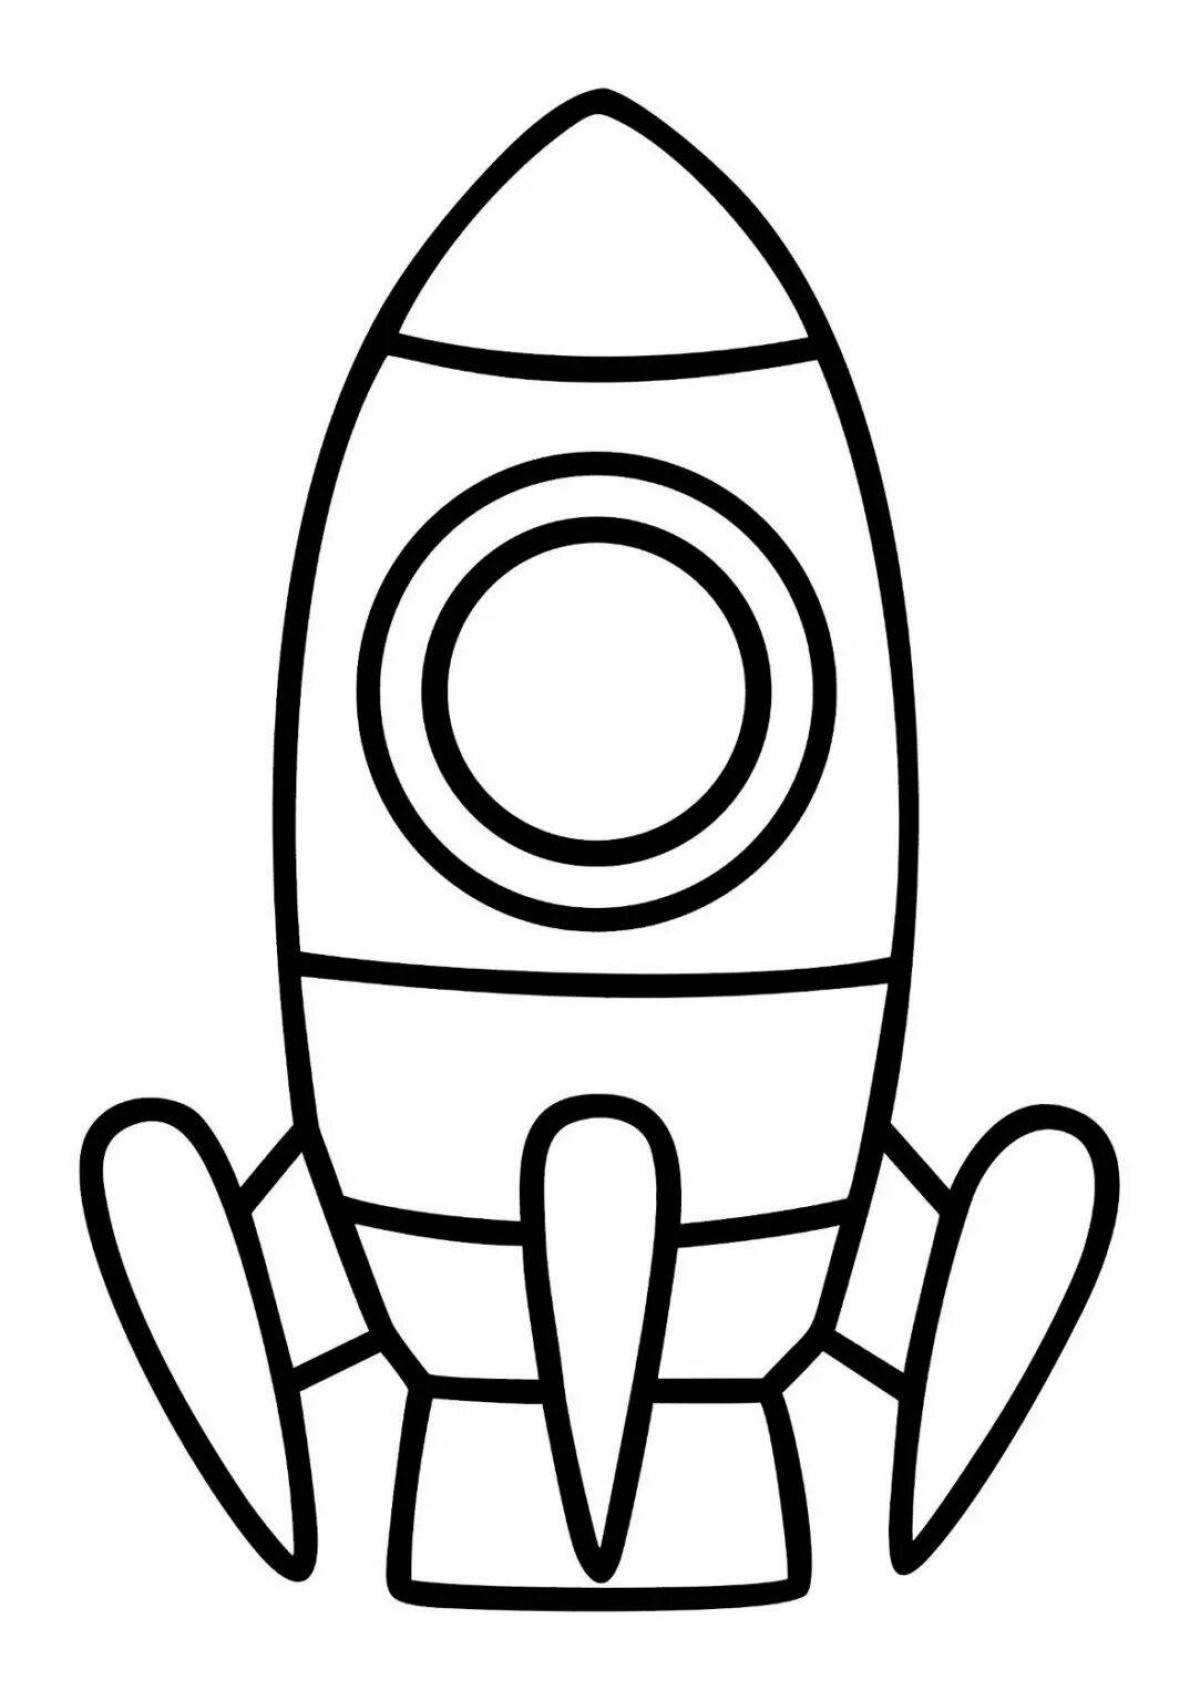 Раскраска ракета 2 3 года. Ракета раскраска. Ракета раскраска для детей. Ракета трафарет для детей. Ракета шаблон для рисования.